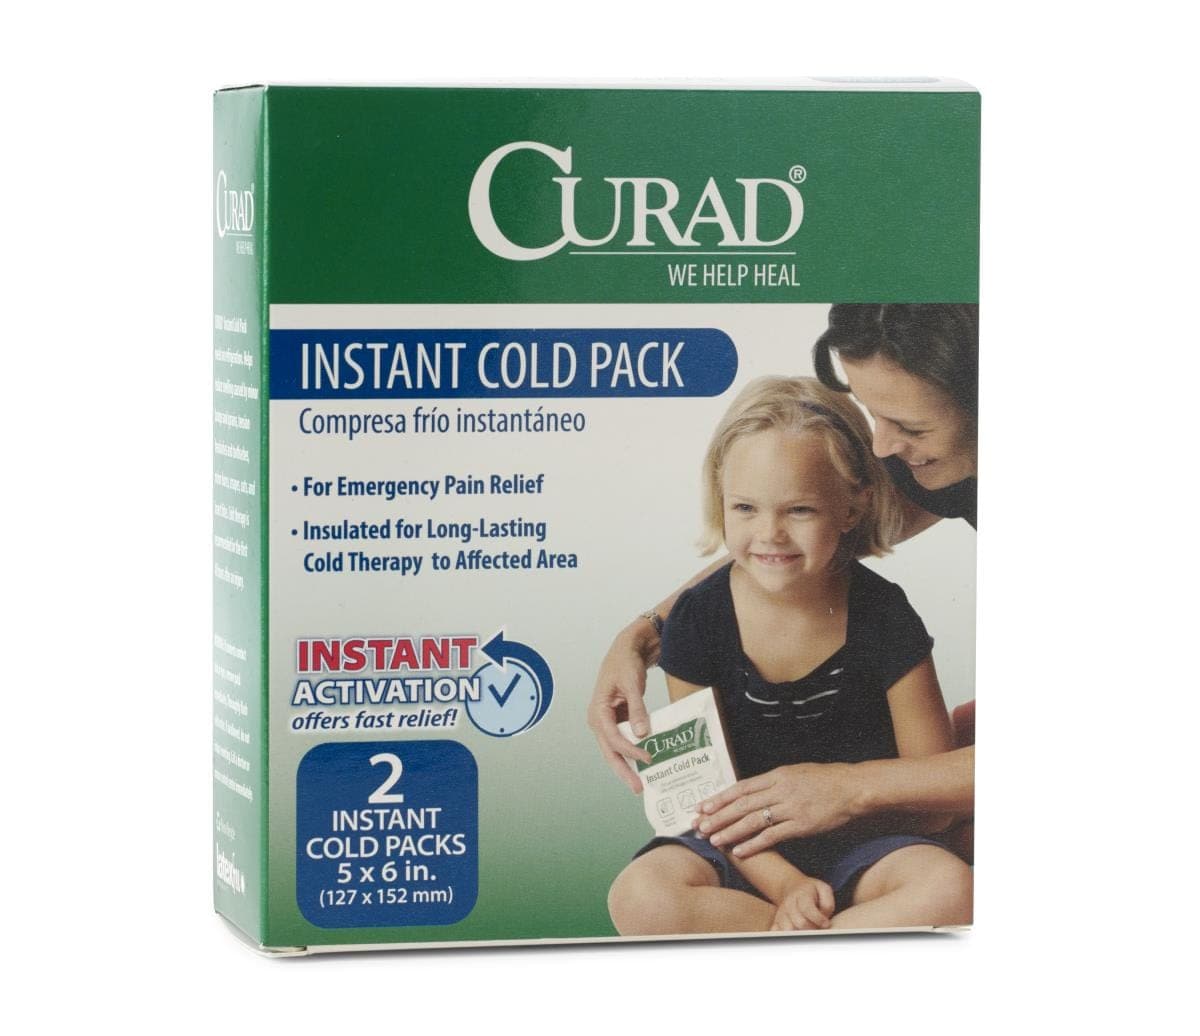 Medline Medline CURAD Instant Cold Packs